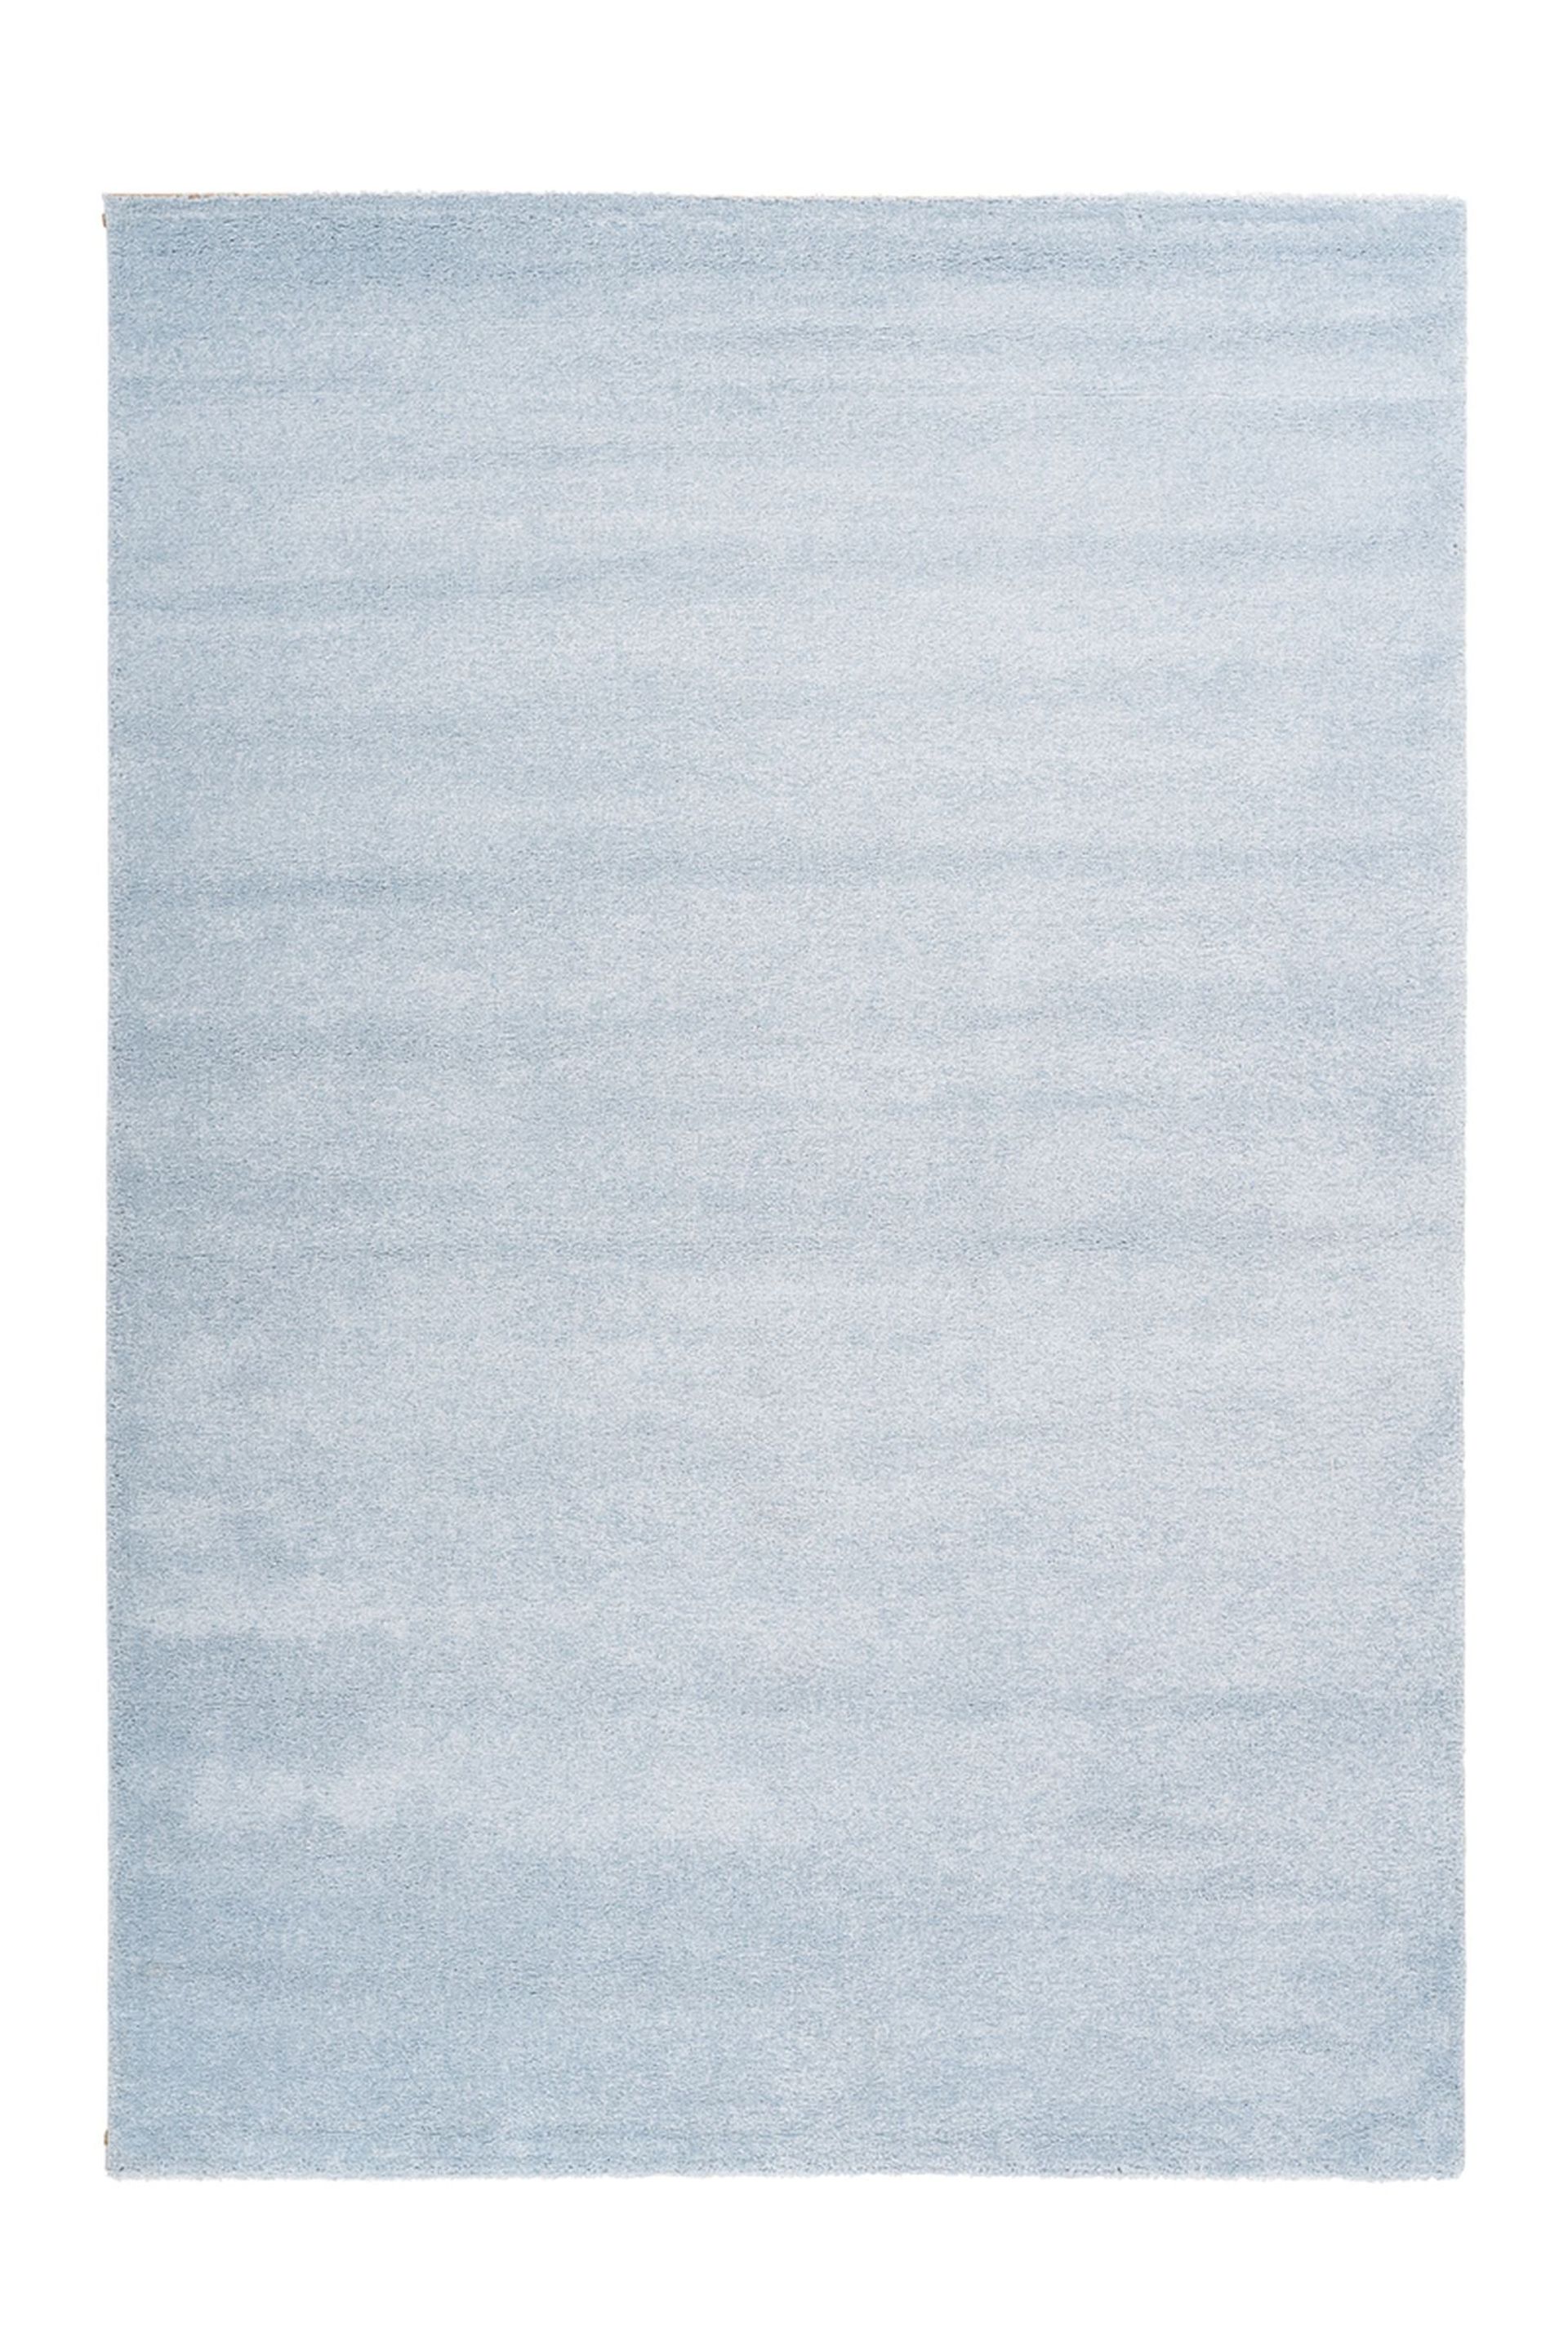 Teppich Australia - Rockhampton Blau 80cm x 150cm